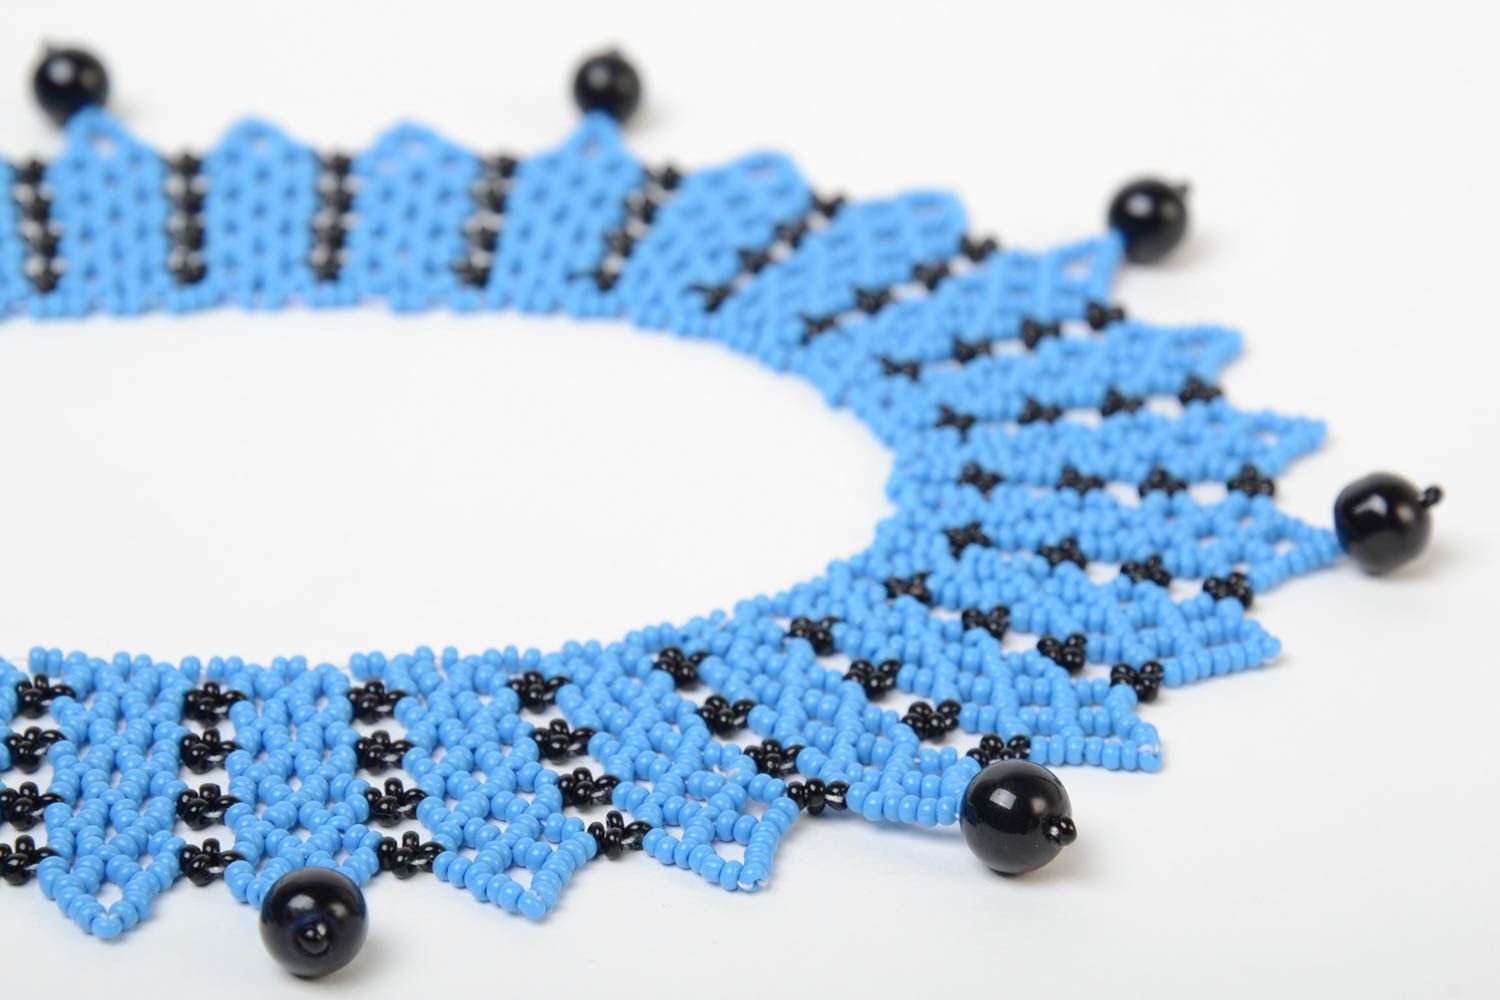 Ожерелье из бисера голубое с черным красивое стильное необычное ручной работы фото 4